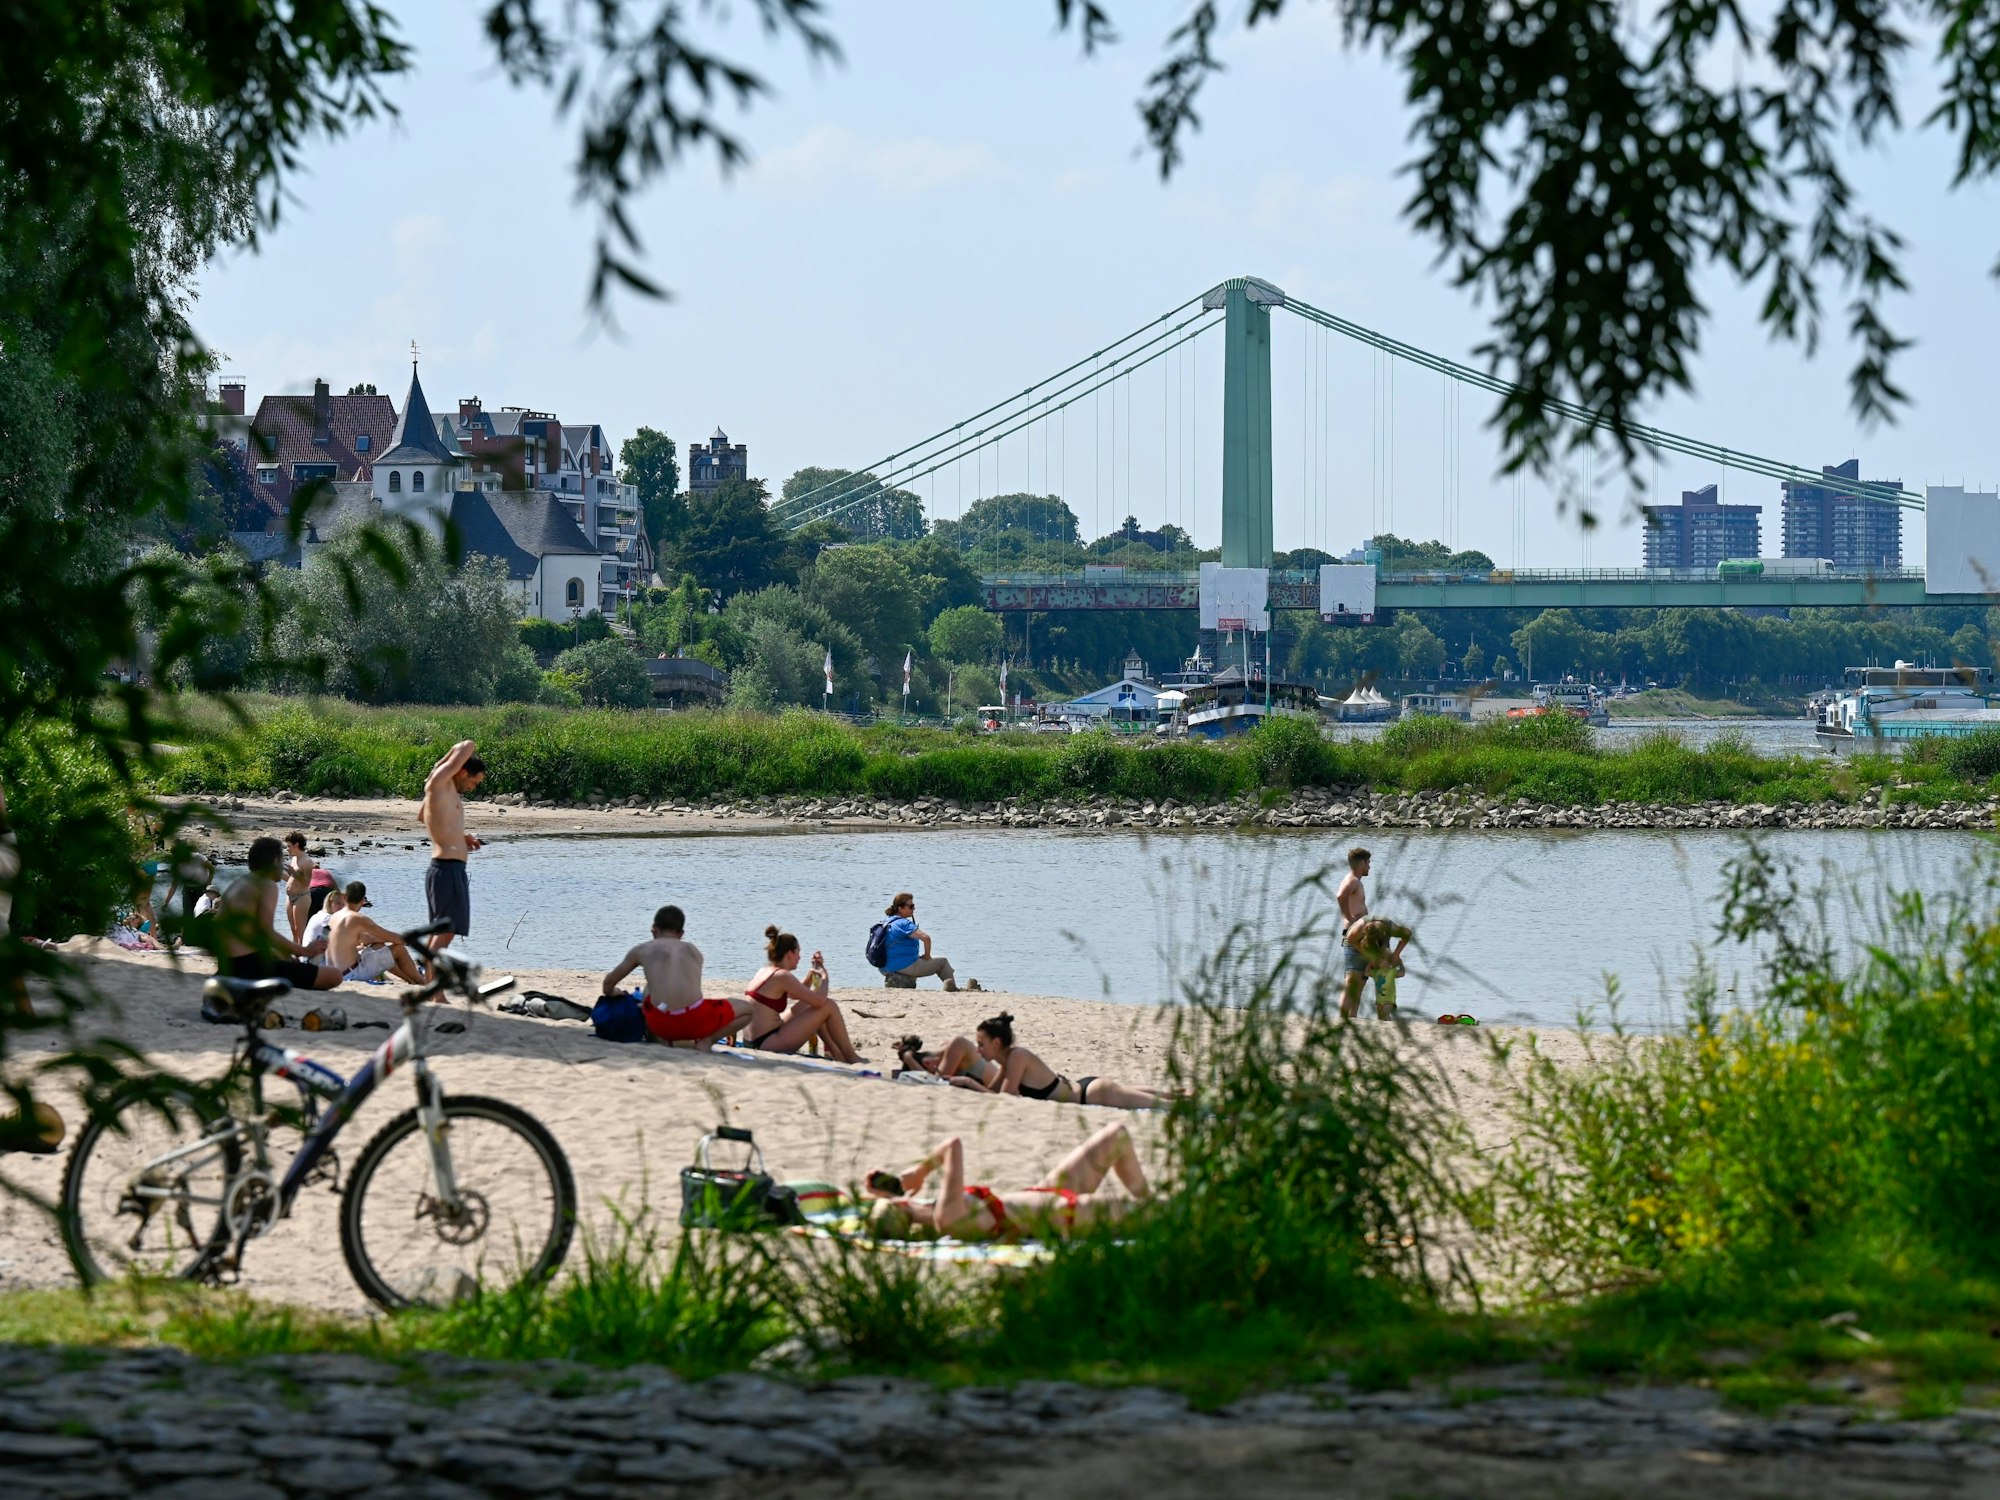 Menschen liegen in Badekleidung am Strand am Rodenkirchener Rheinufer.